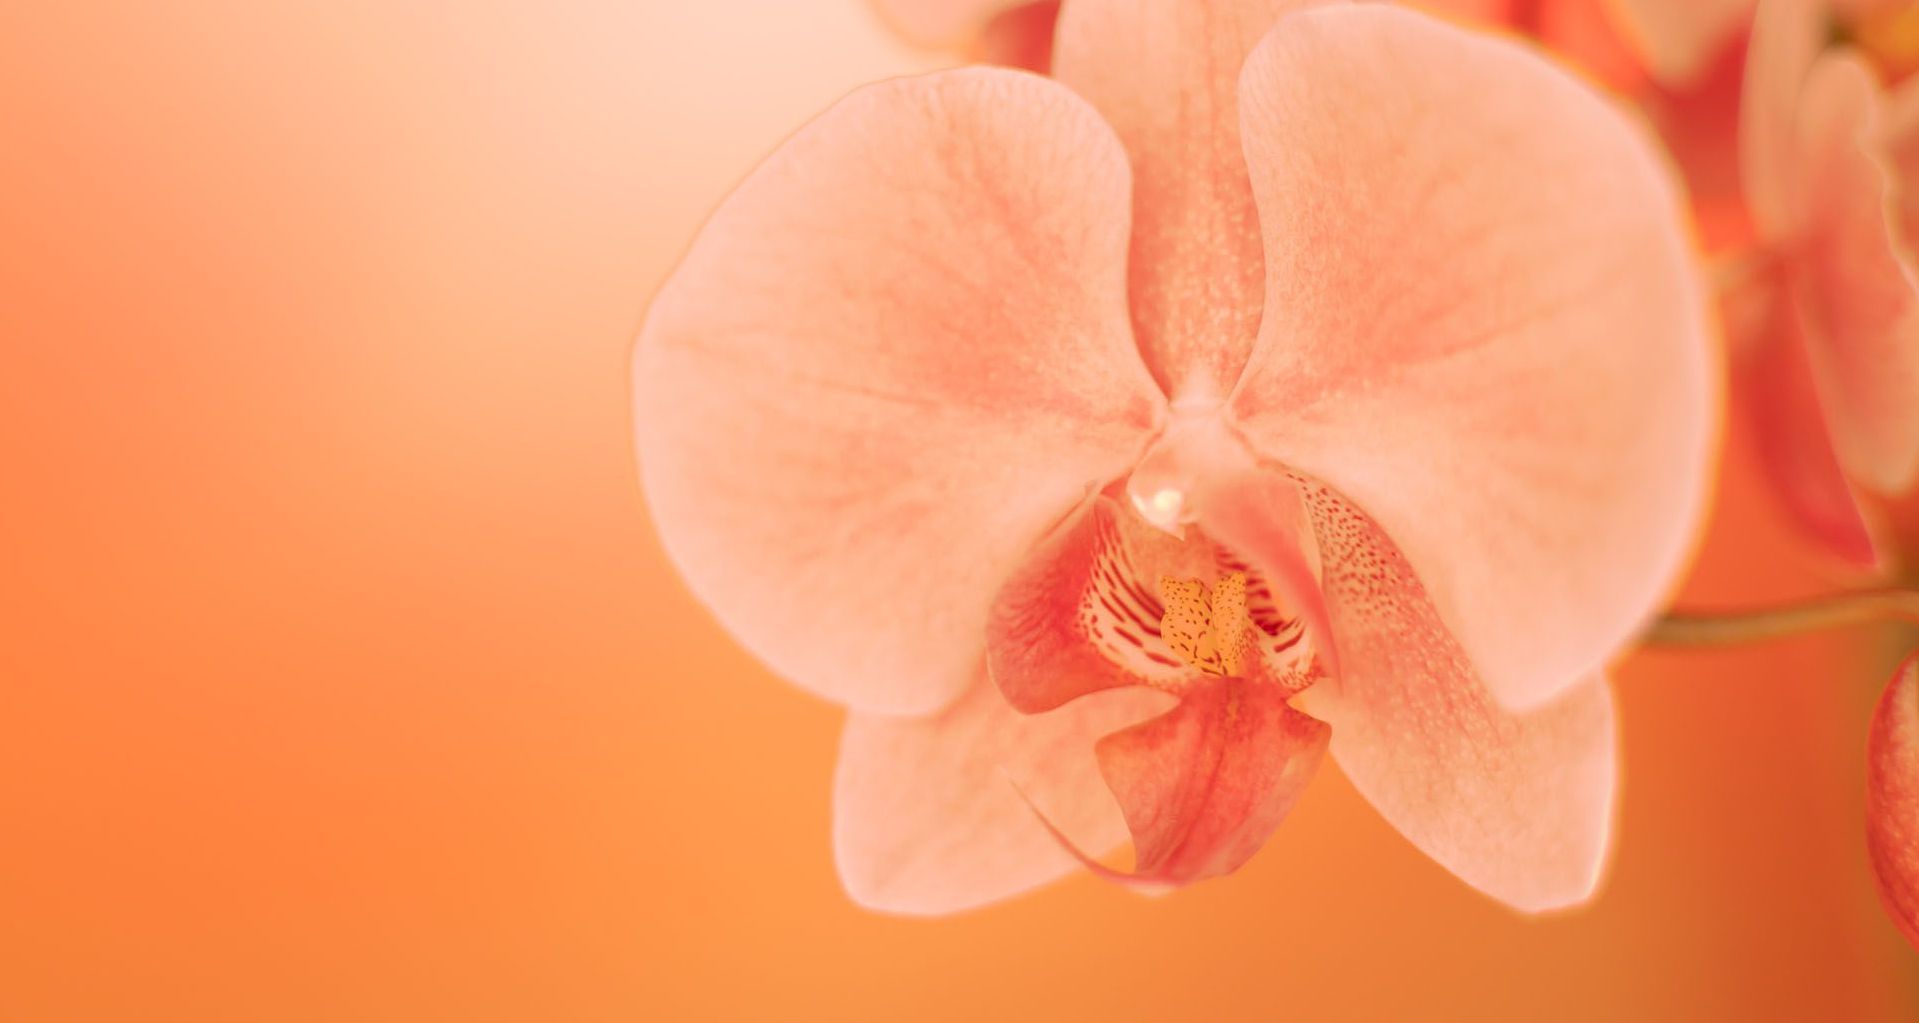 Orchideenblüte vor orangenem Hintergrund